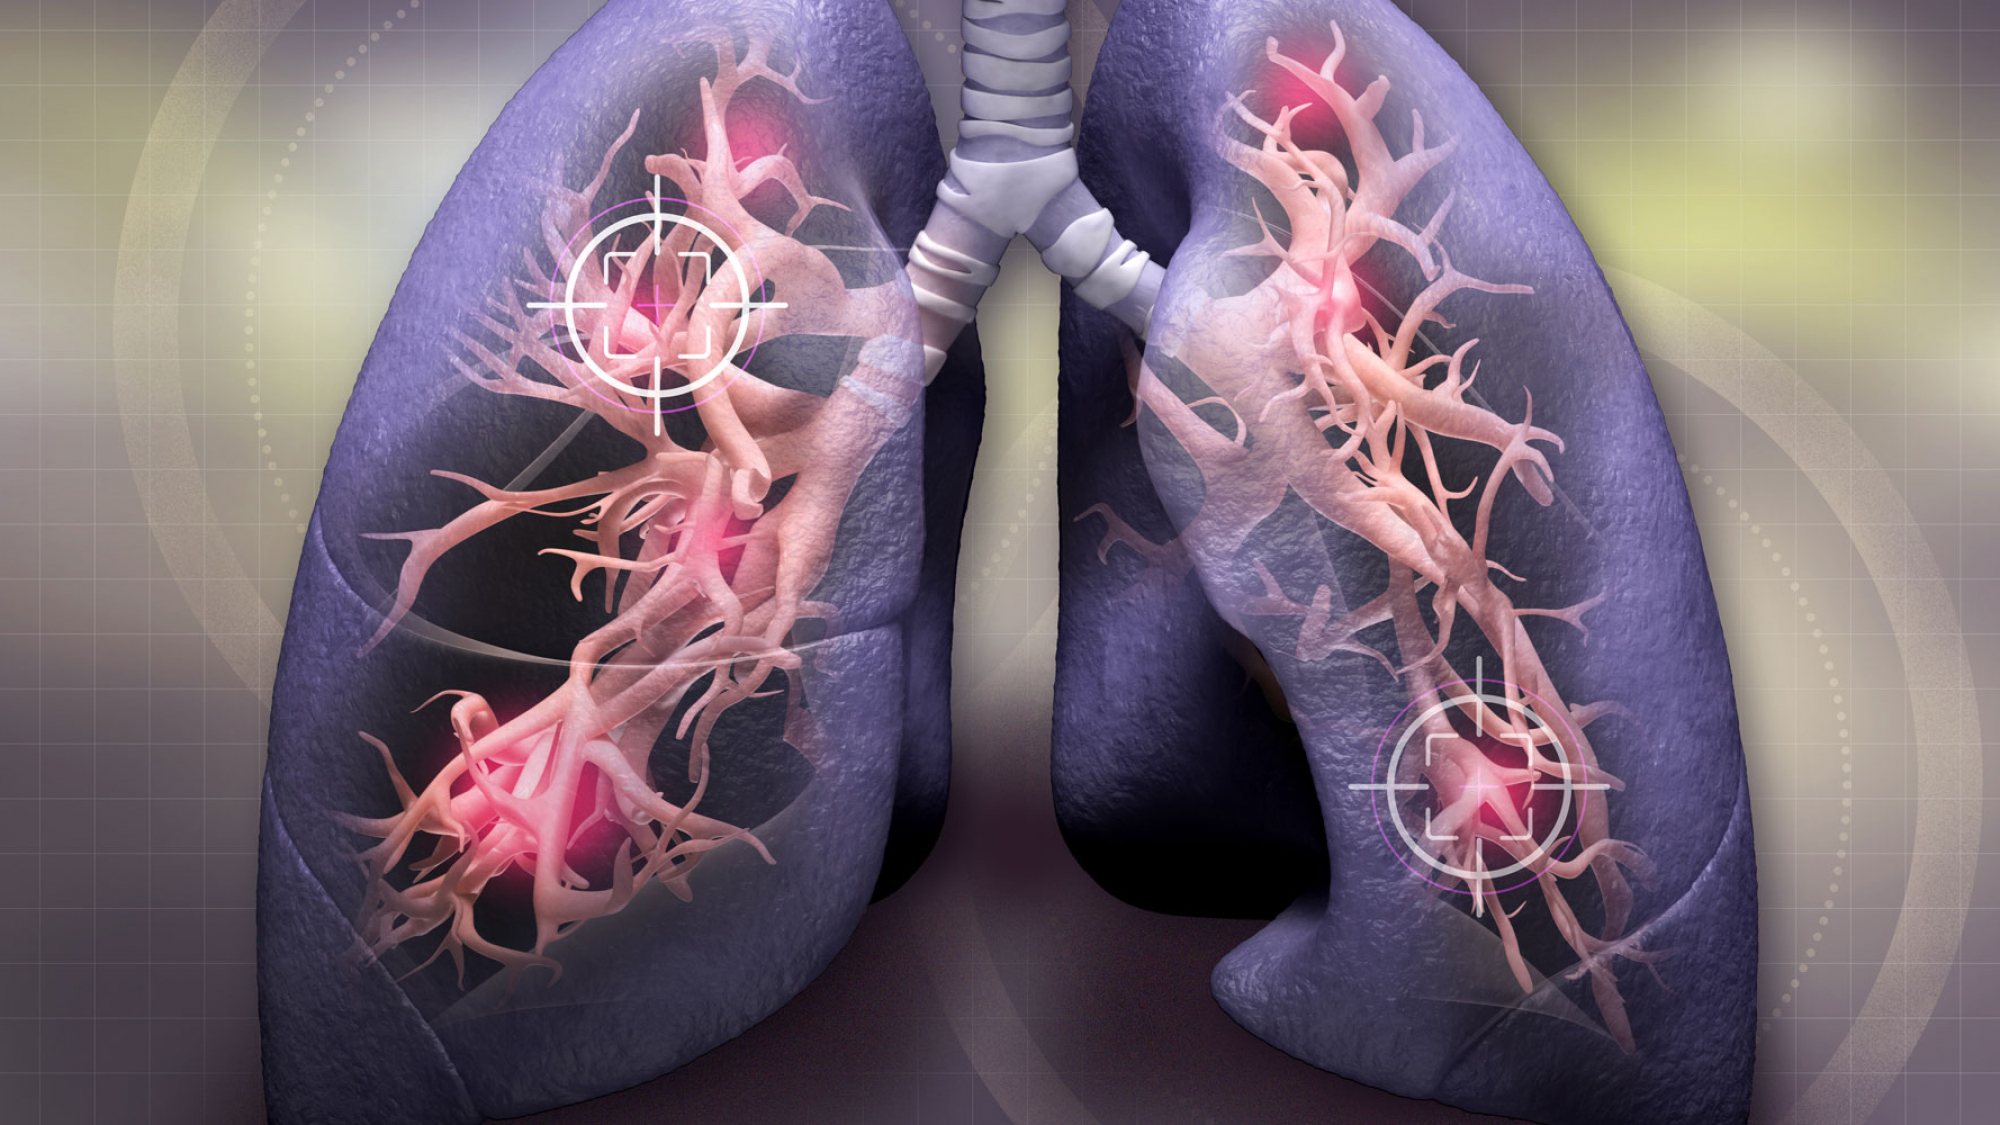 سرطان ریه نوعی سرطان است که از ریه ها شروع می شود. ریه ها دو اندام اسفنجی در قفسه سینه هستند که هنگام استنشاق اکسیژن دریافت می کنند و هنگام بازدم دی اکسید کربن آزاد می کنند.